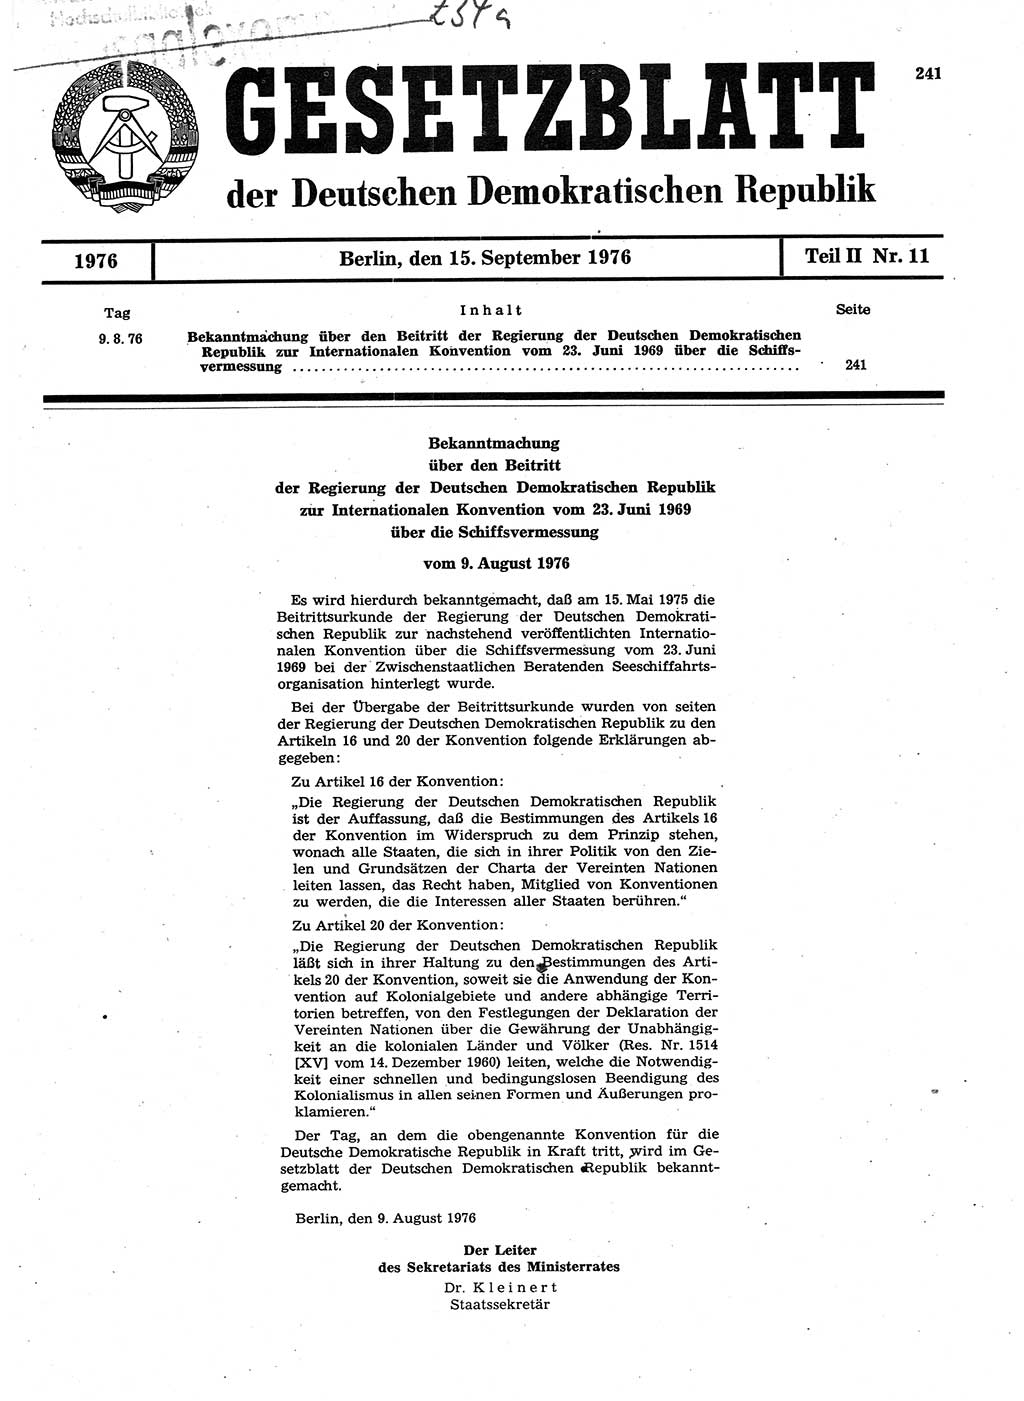 Gesetzblatt (GBl.) der Deutschen Demokratischen Republik (DDR) Teil ⅠⅠ 1976, Seite 241 (GBl. DDR ⅠⅠ 1976, S. 241)